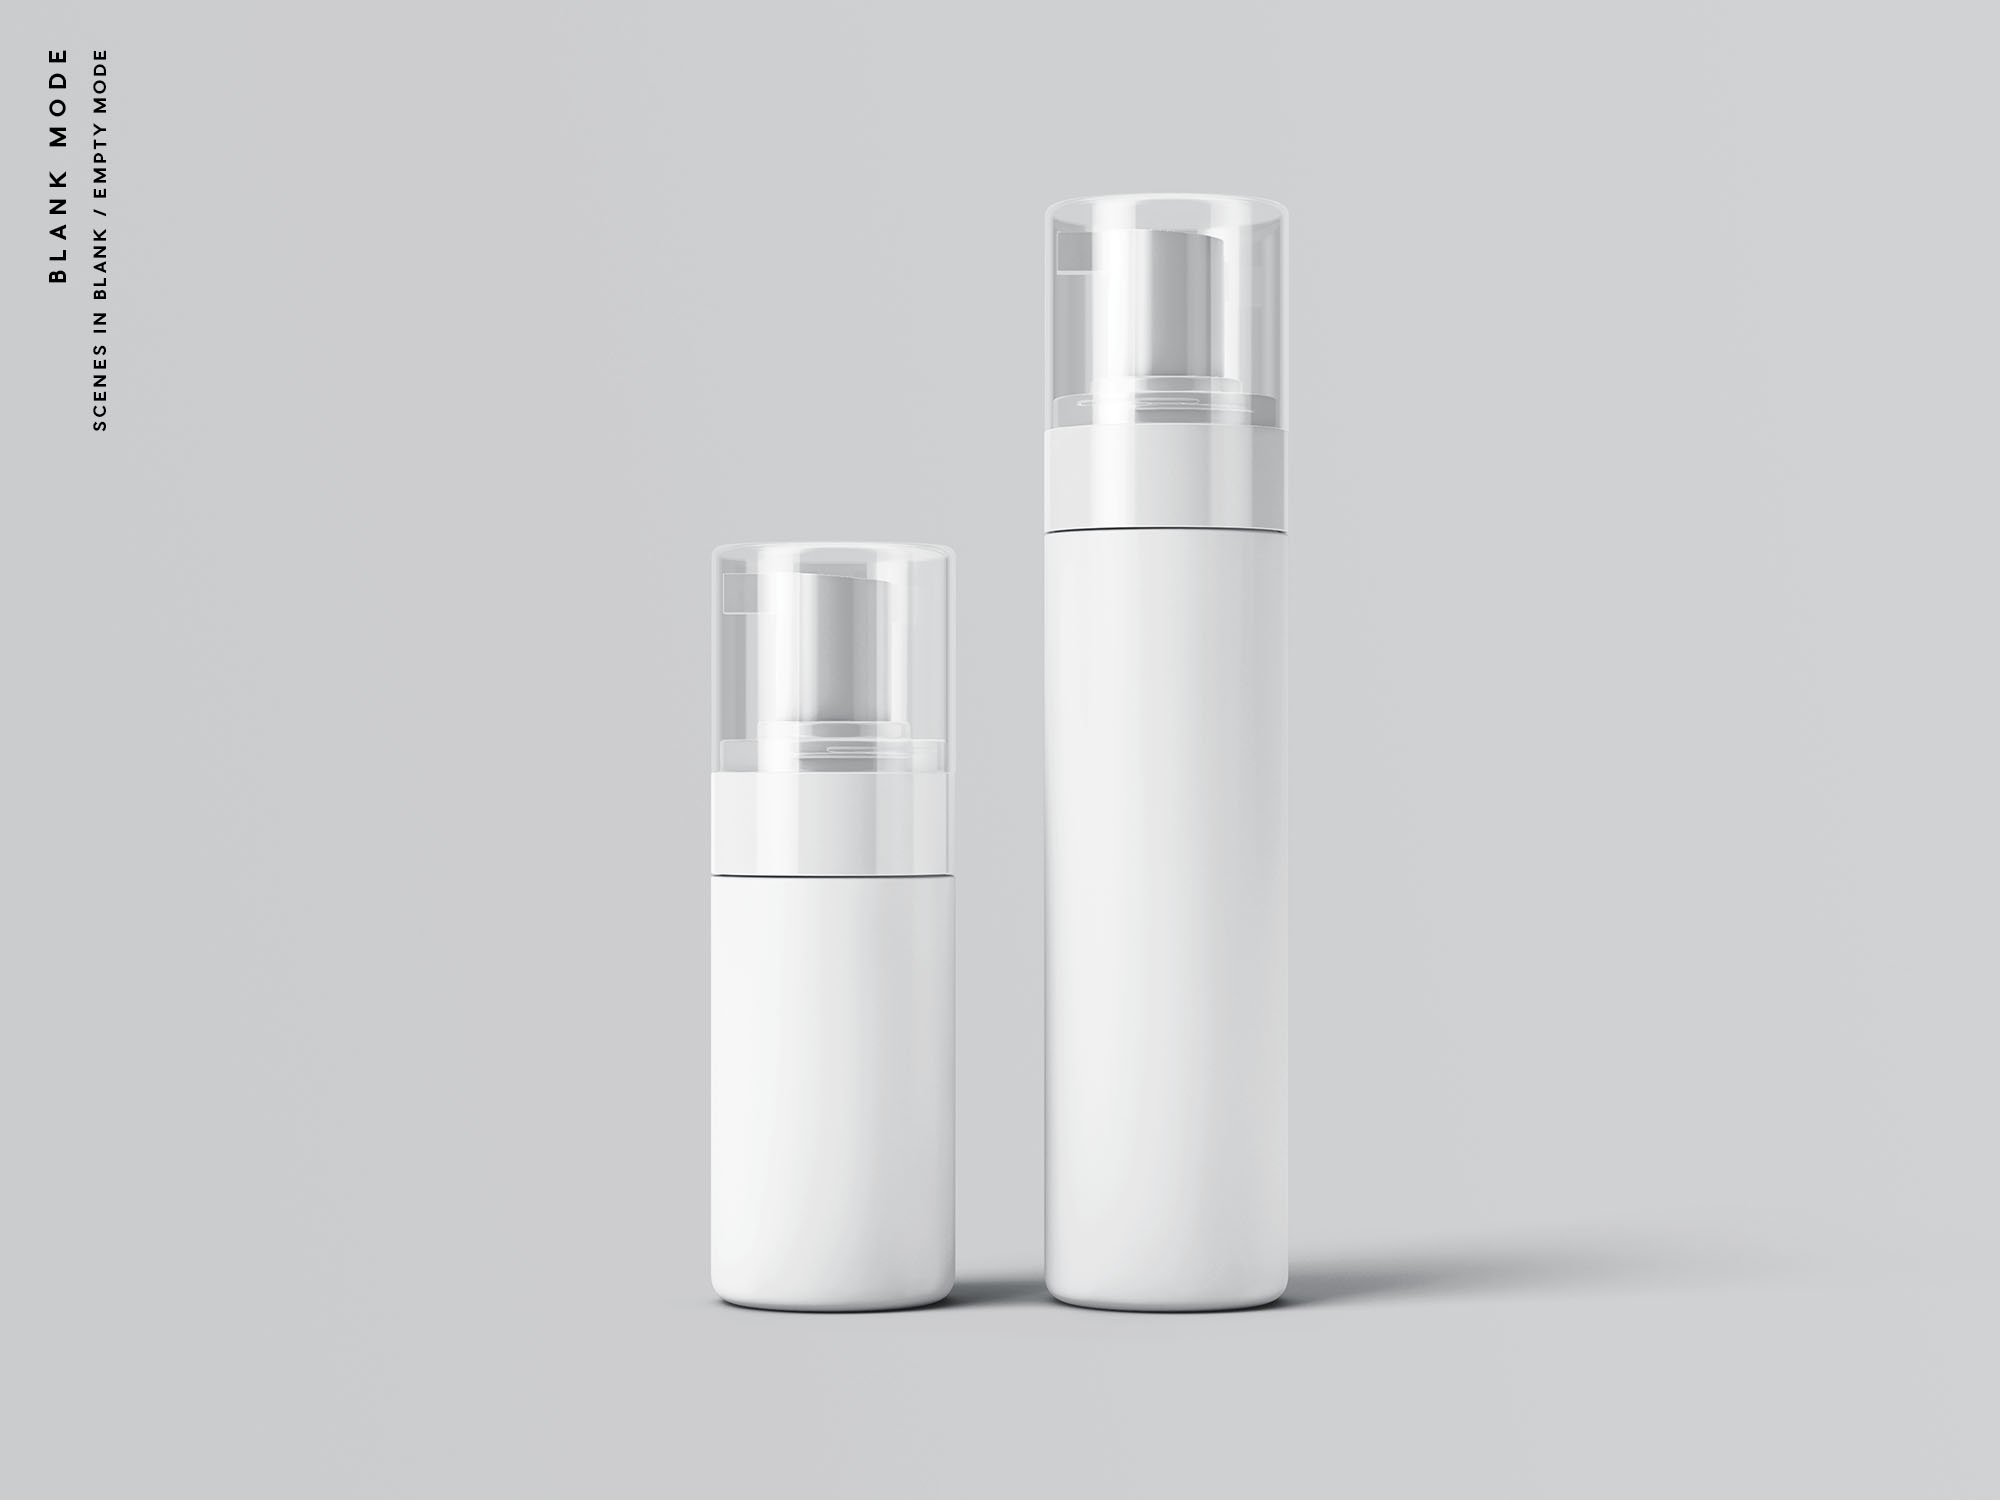 按压式化妆品护肤品瓶外观设计素材库精选模板 Cosmetic Bottles Packaging Mockup插图(9)